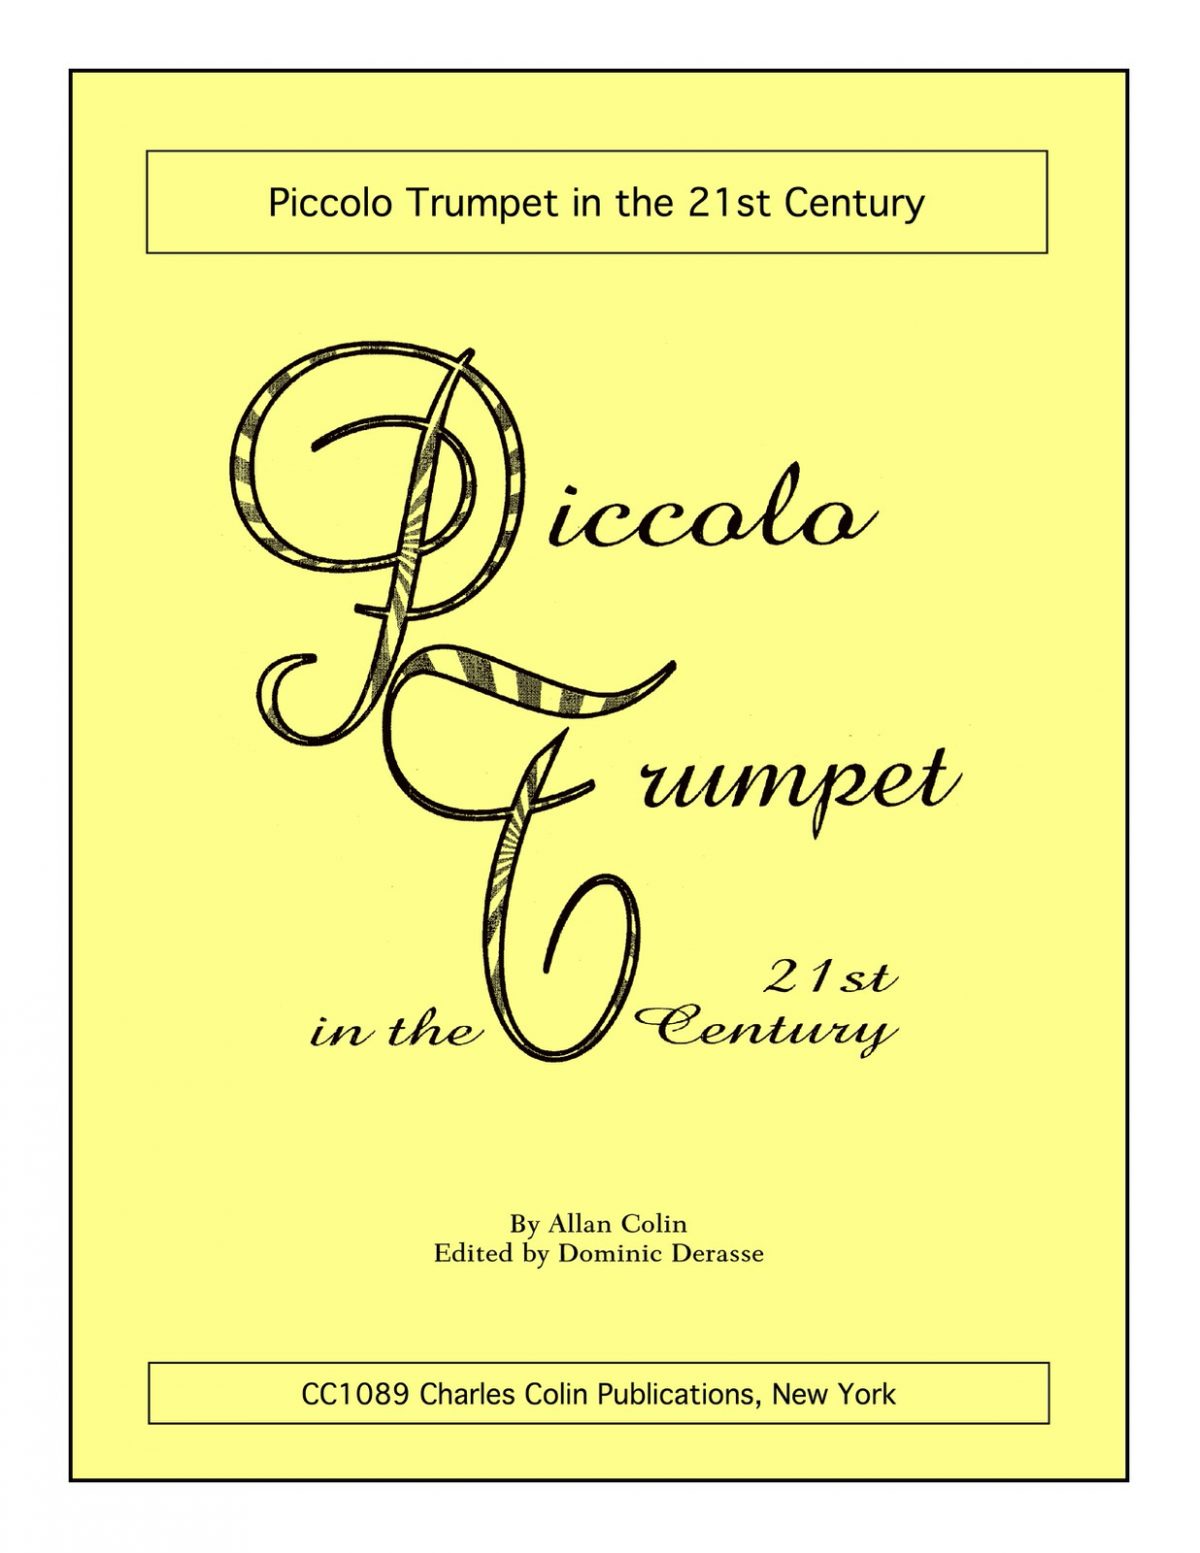 Colin, Allan, Piccolo Trumpet in the 21st Century-p01